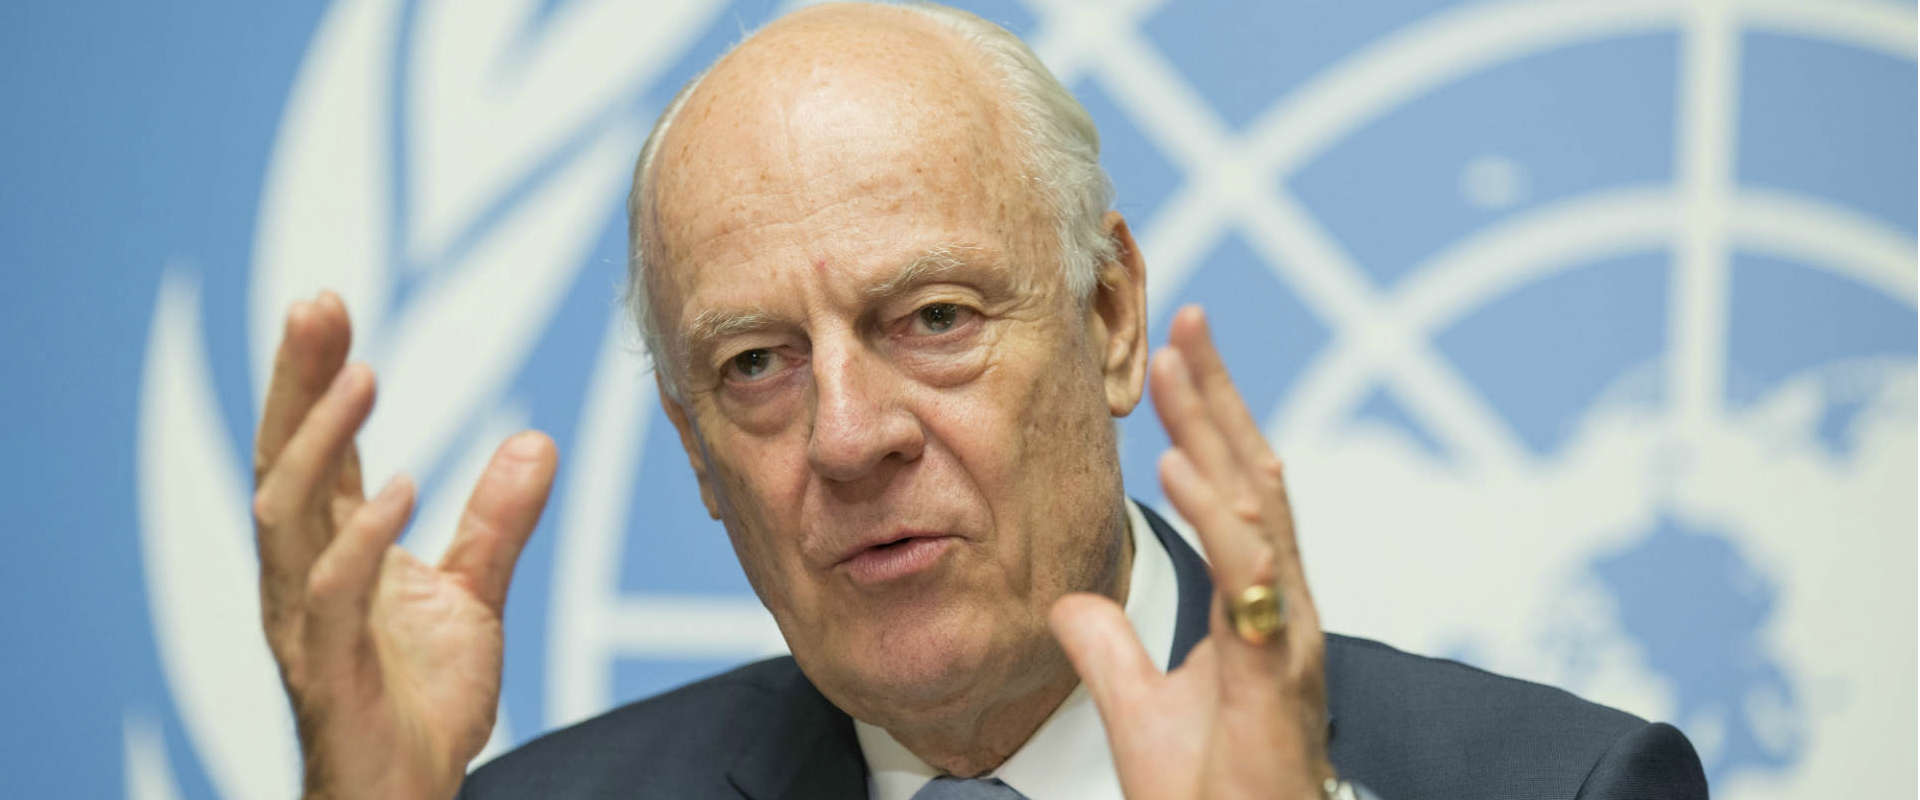 שליח האו"ם לסוריה, סטפן דה-מיסטורה